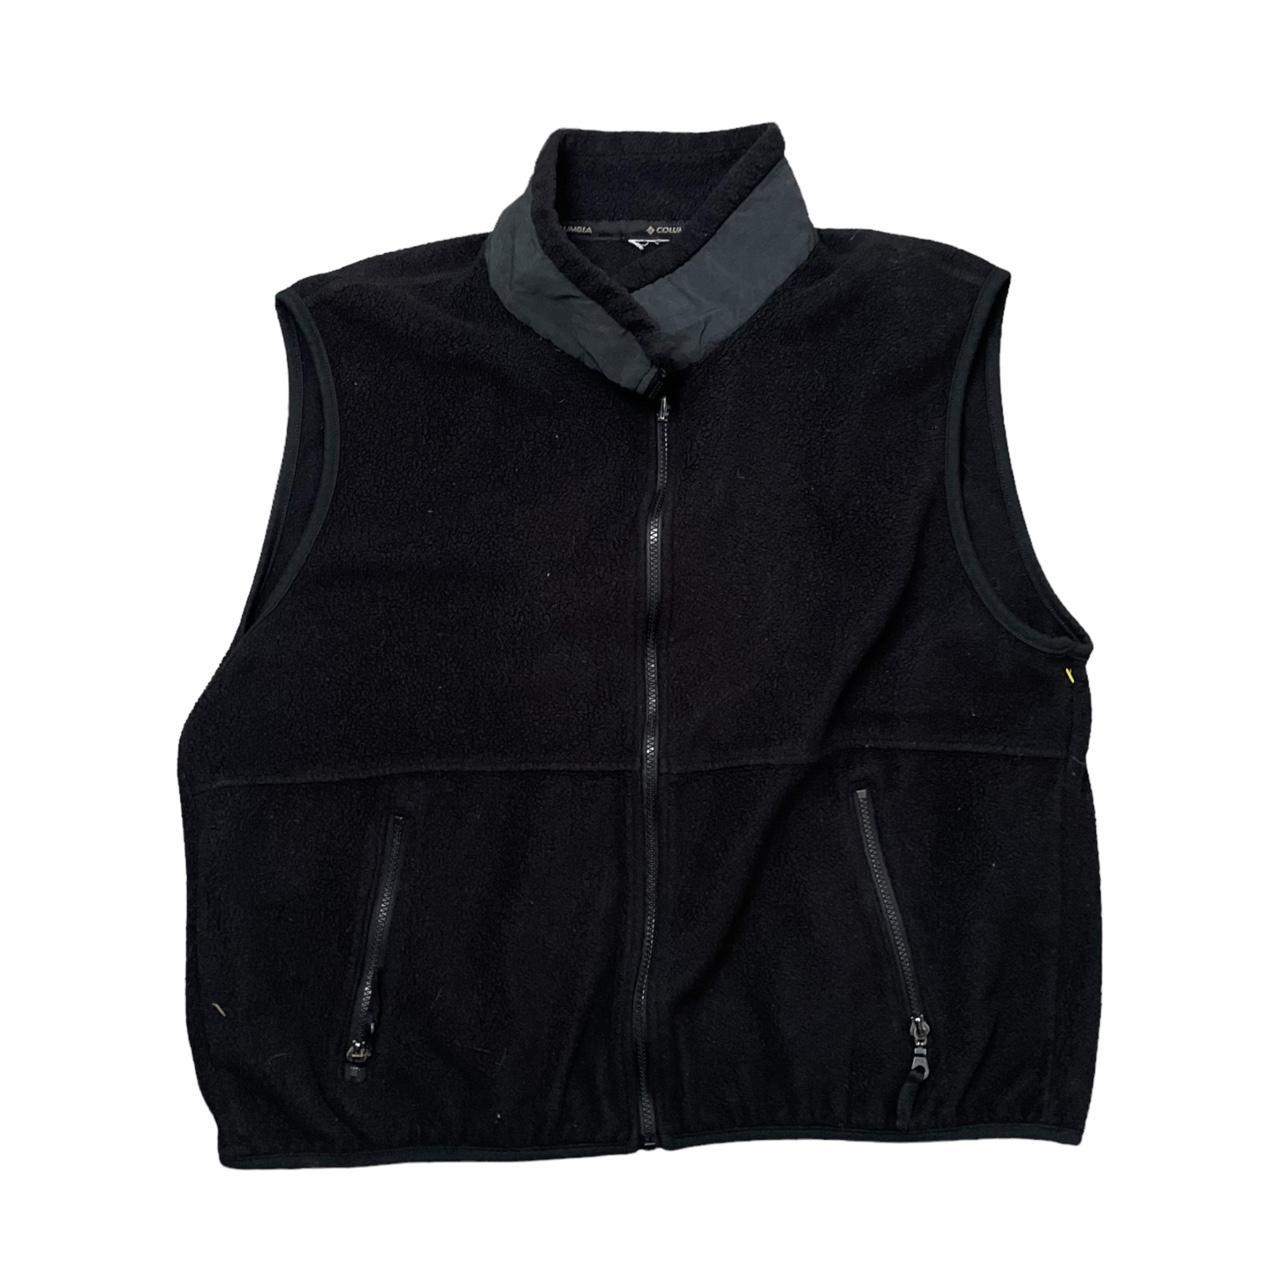 Vintage Columbia fleece vest - Adult XL 2000s... - Depop